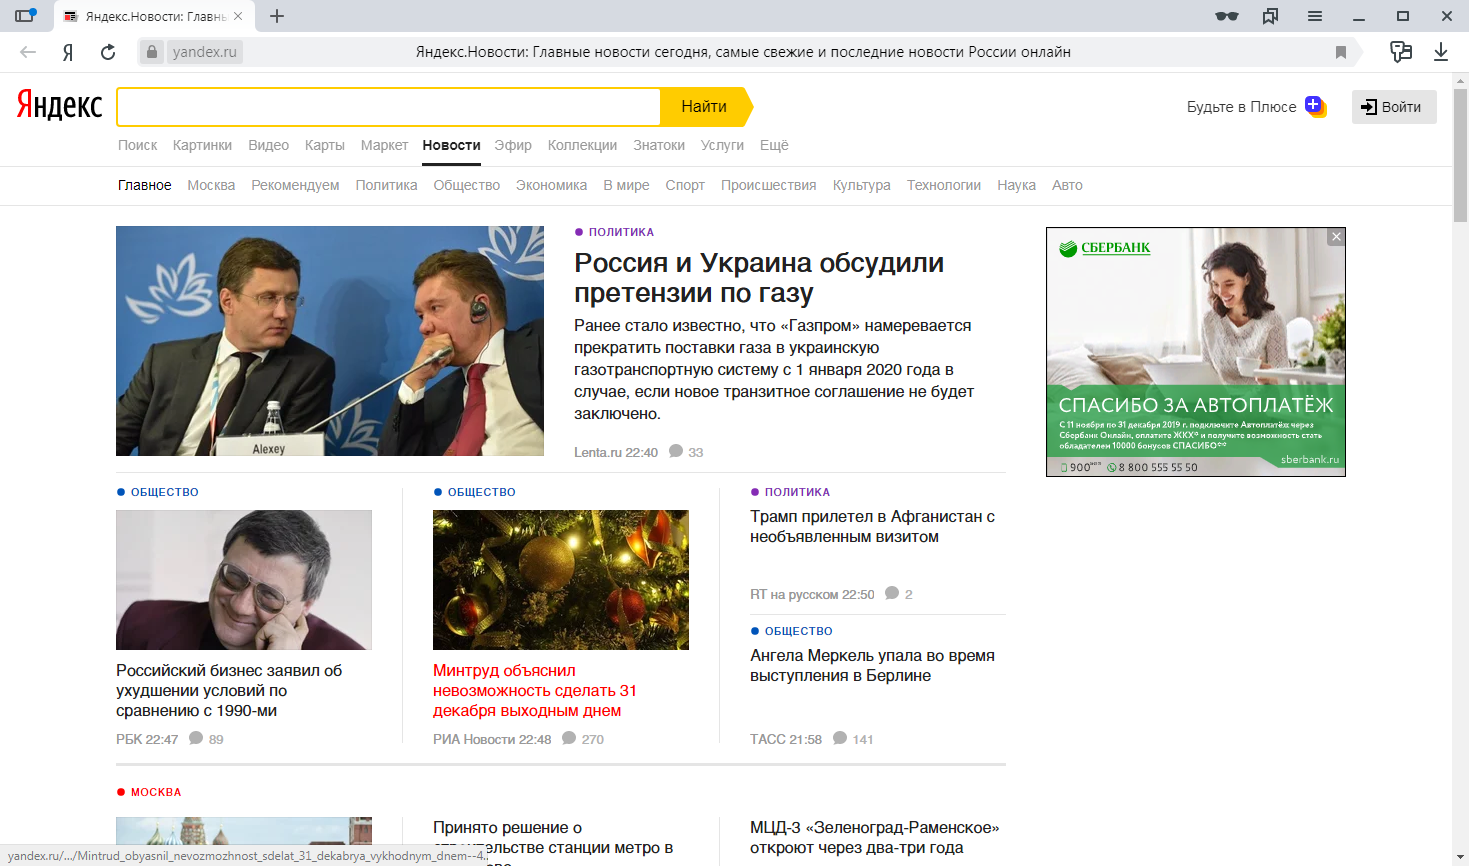 Лента сообщений на главной странице в новостном агрегаторе Яндекс.Новости